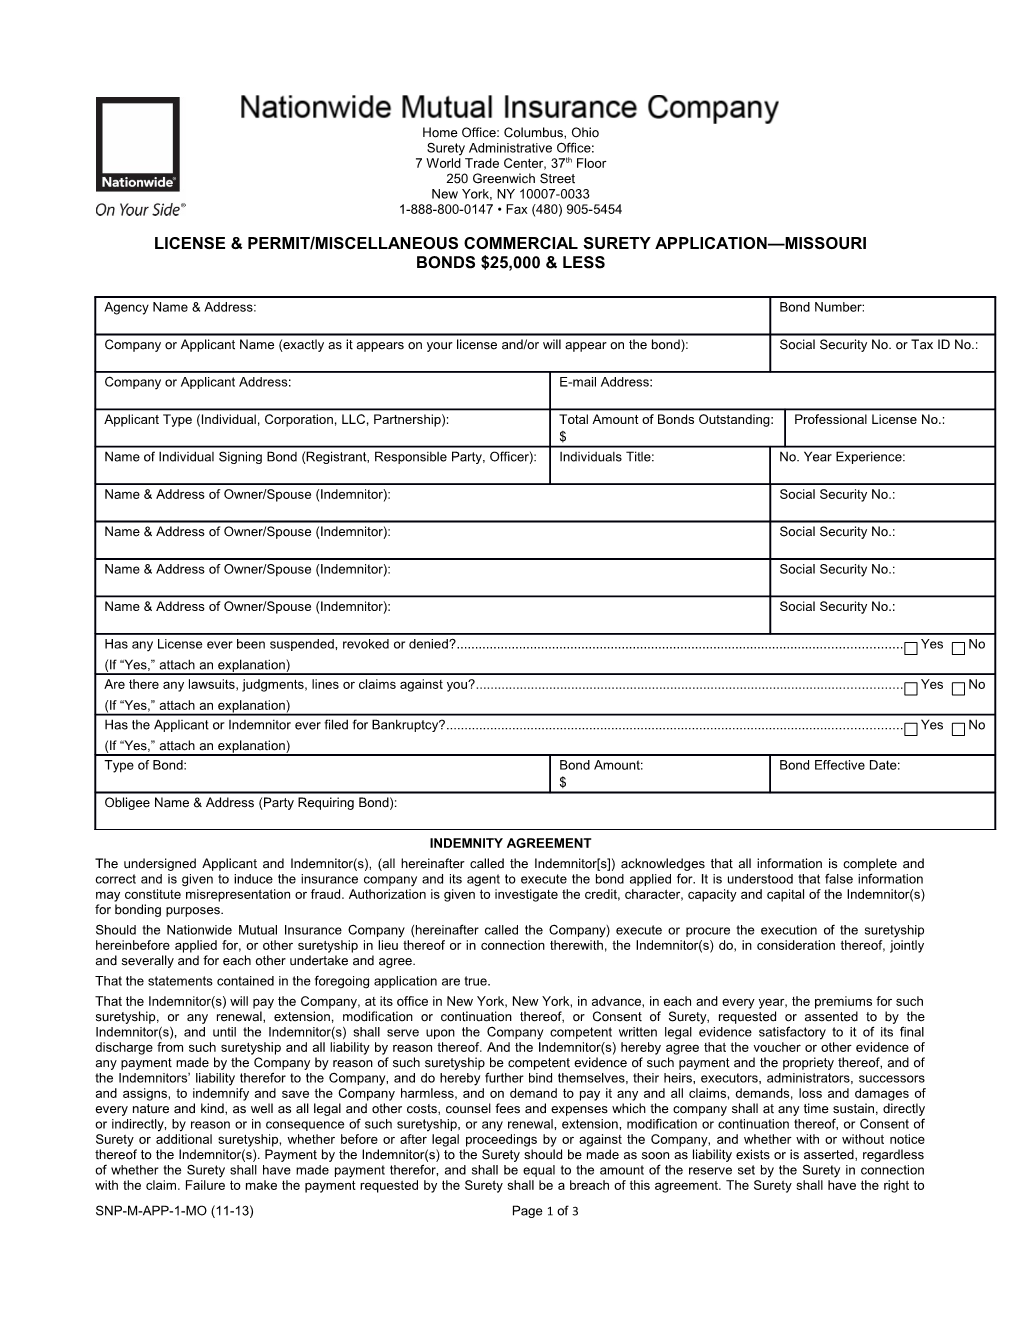 License & Permit/Miscellaneous Commercial Surety Application Missouri Bonds $25,000 & Less